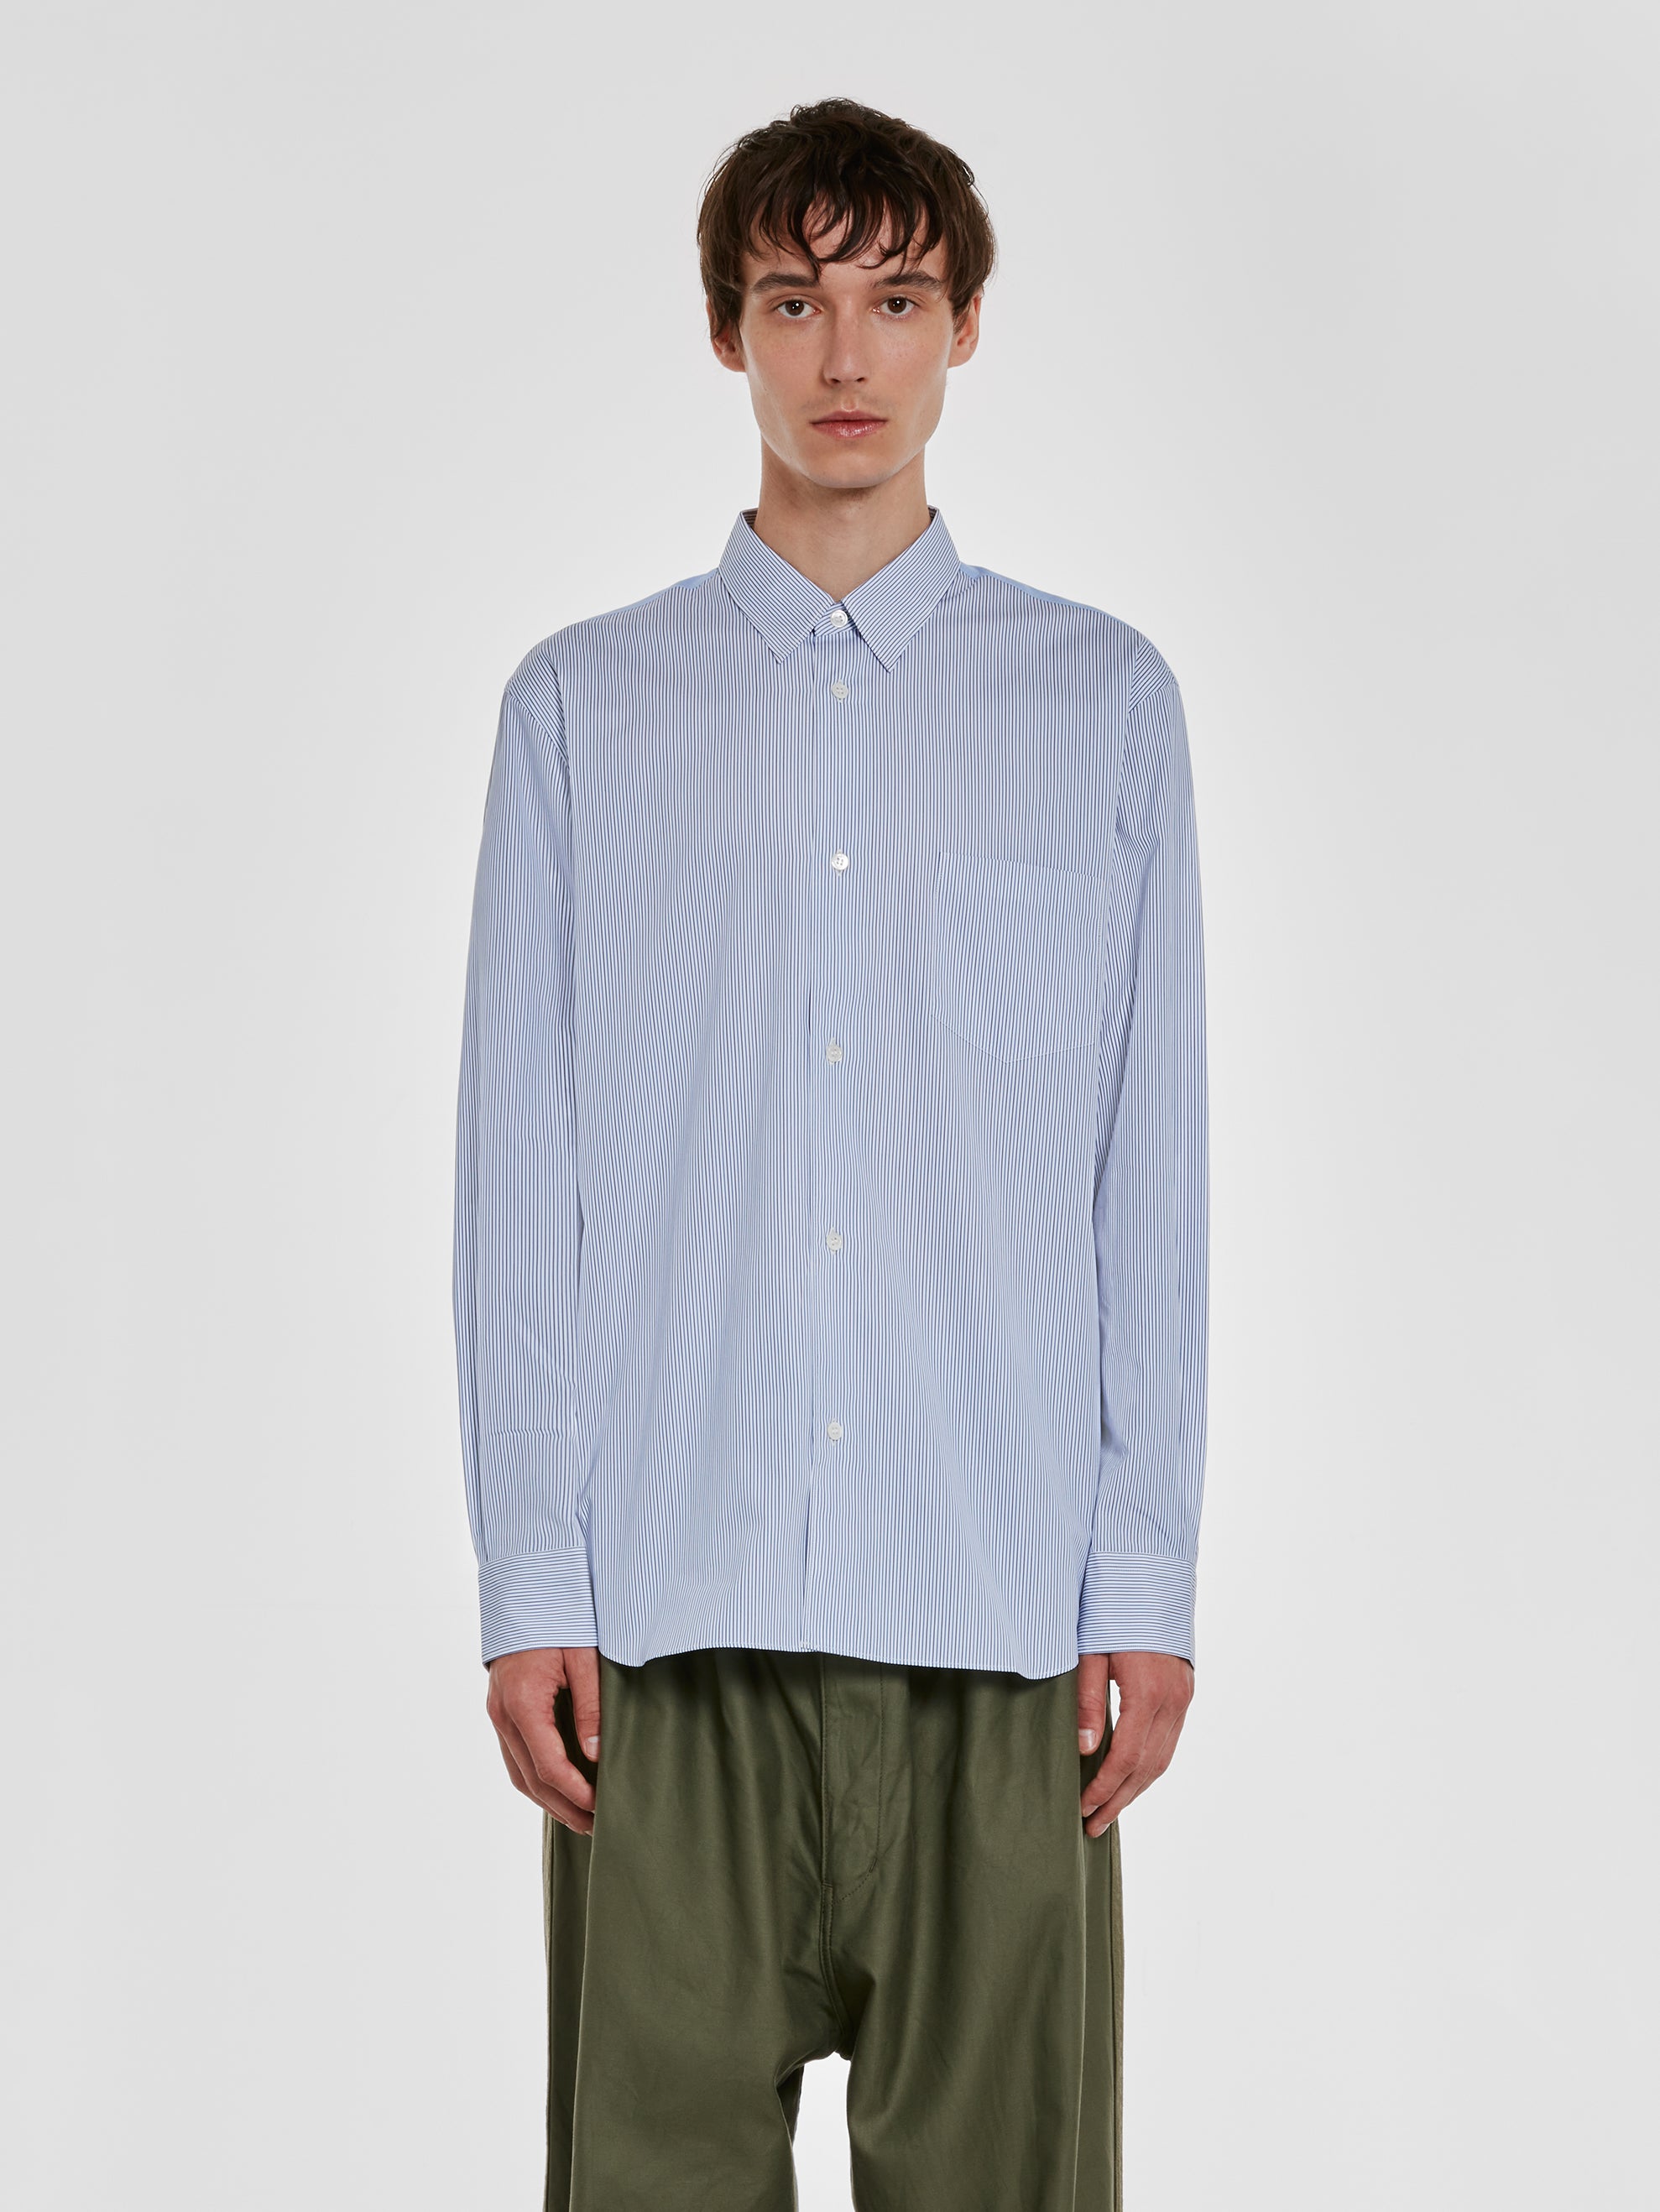 Comme des Garçons Homme - Men’s Cotton Stripe/Check Shirt - (White/Blue) view 1